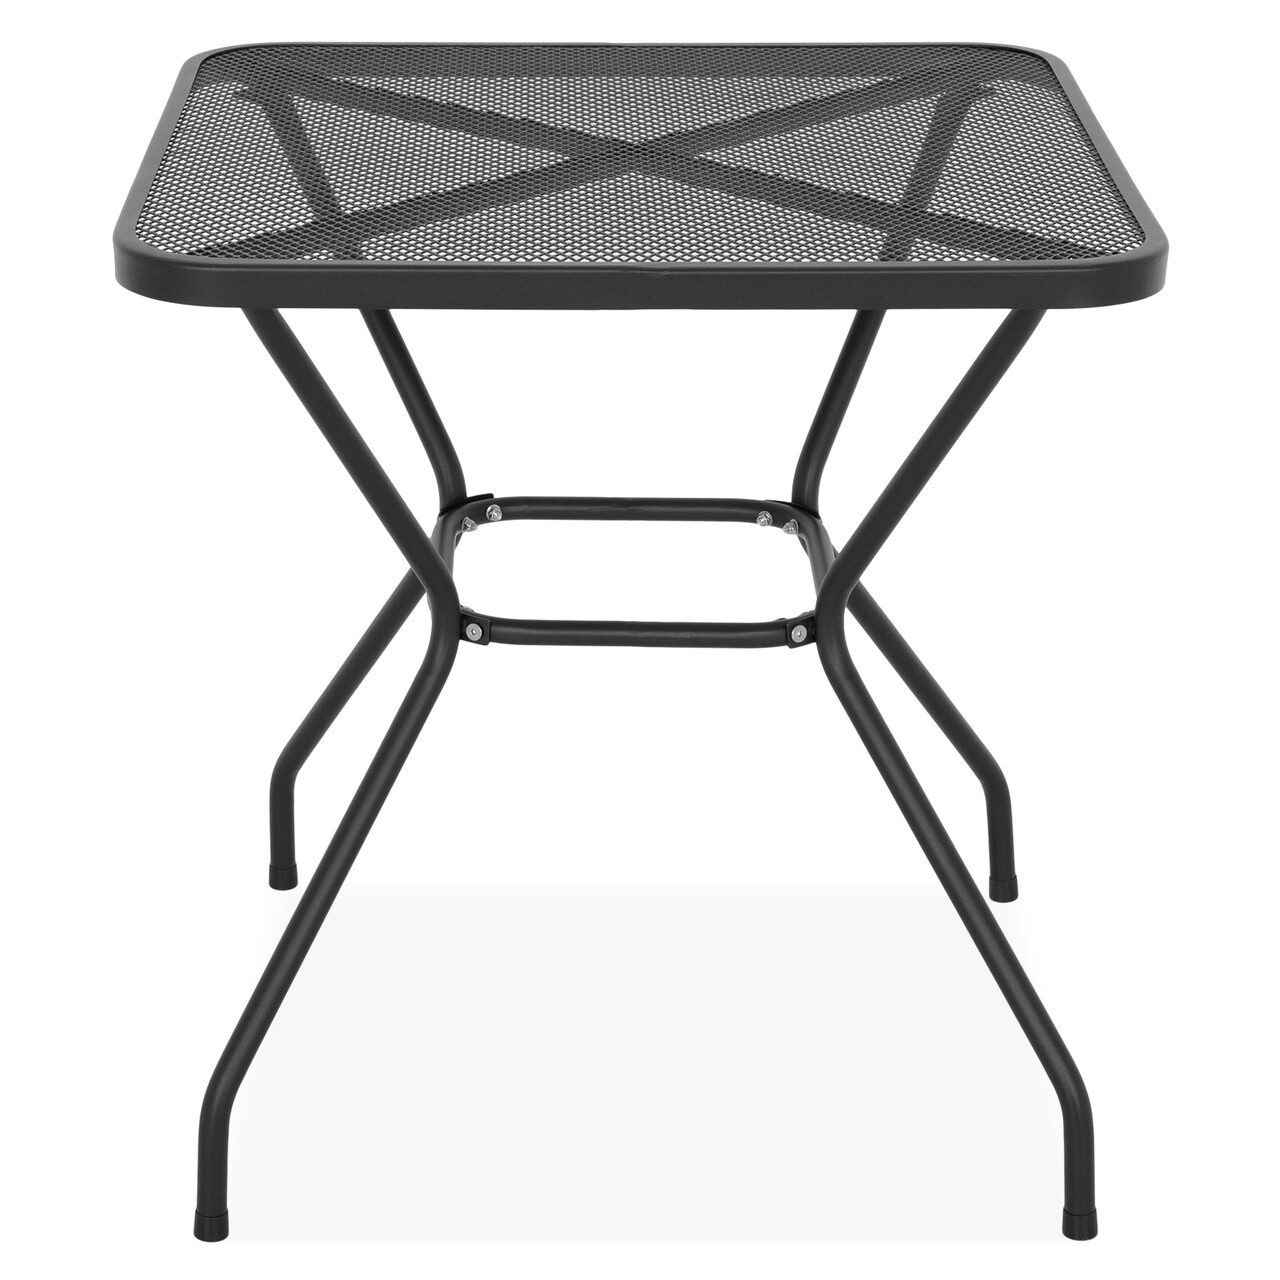 Maison berlin asztal, l.70 l.70 h.72 cm, acél, fekete